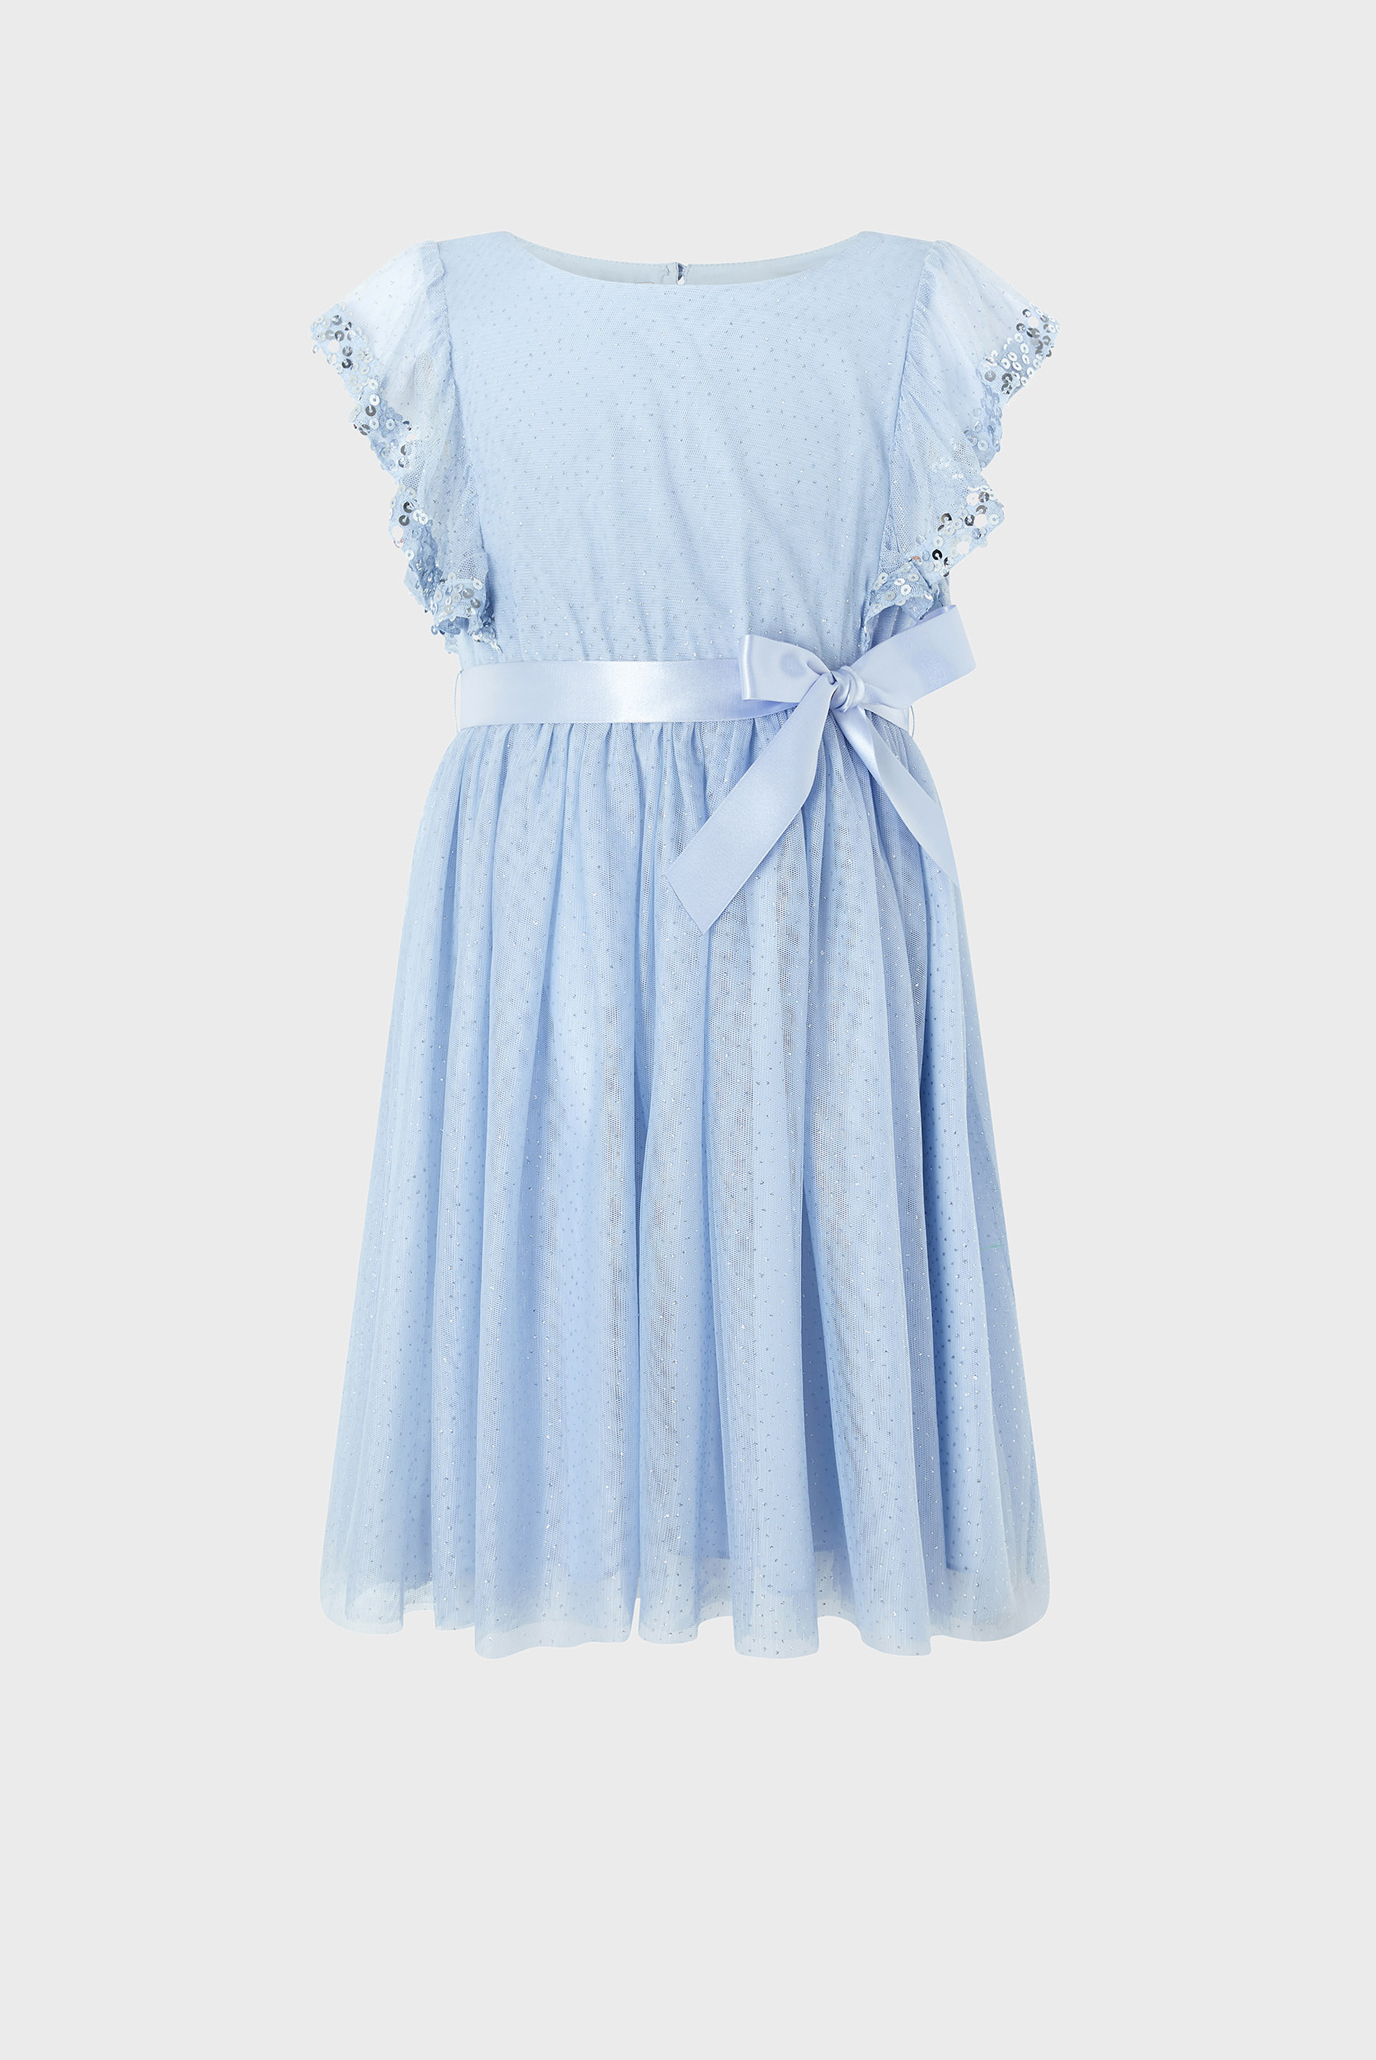 Дитяча блакитна сукня AMIKA BLUE SEQUIN FR 1